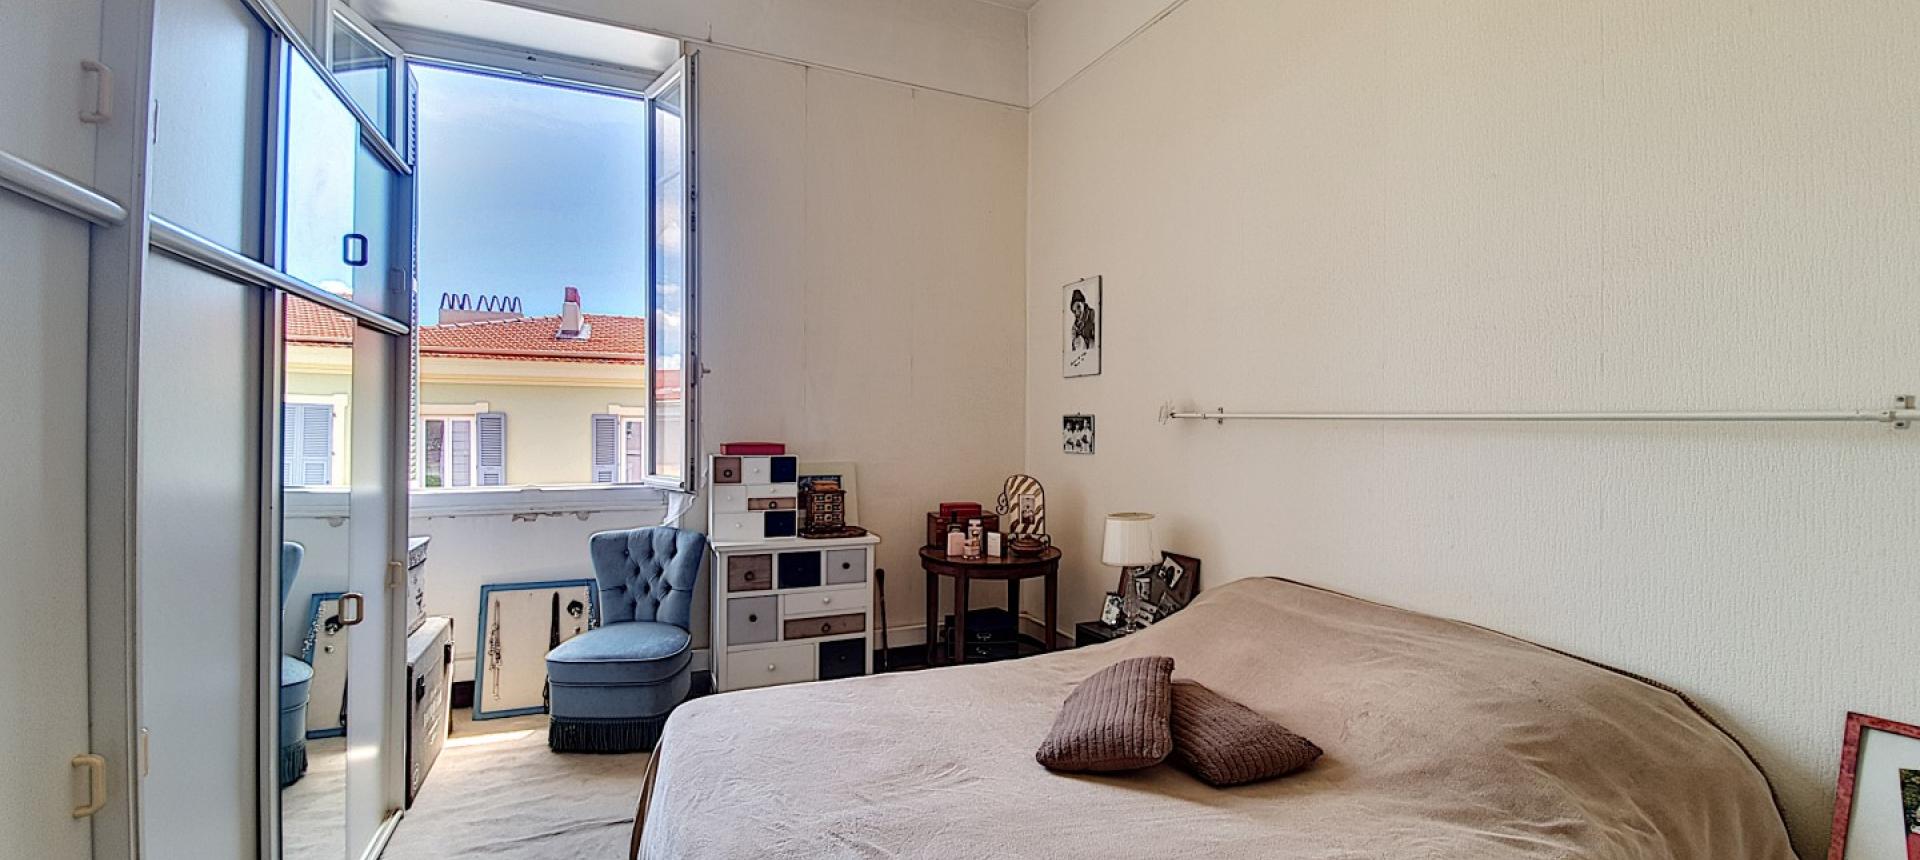 En Corse, à Ajaccio, quartier du tribunal, proche du cours Napoléon, vente d'un appartement de type F3 au 4ème étage avec balcon.